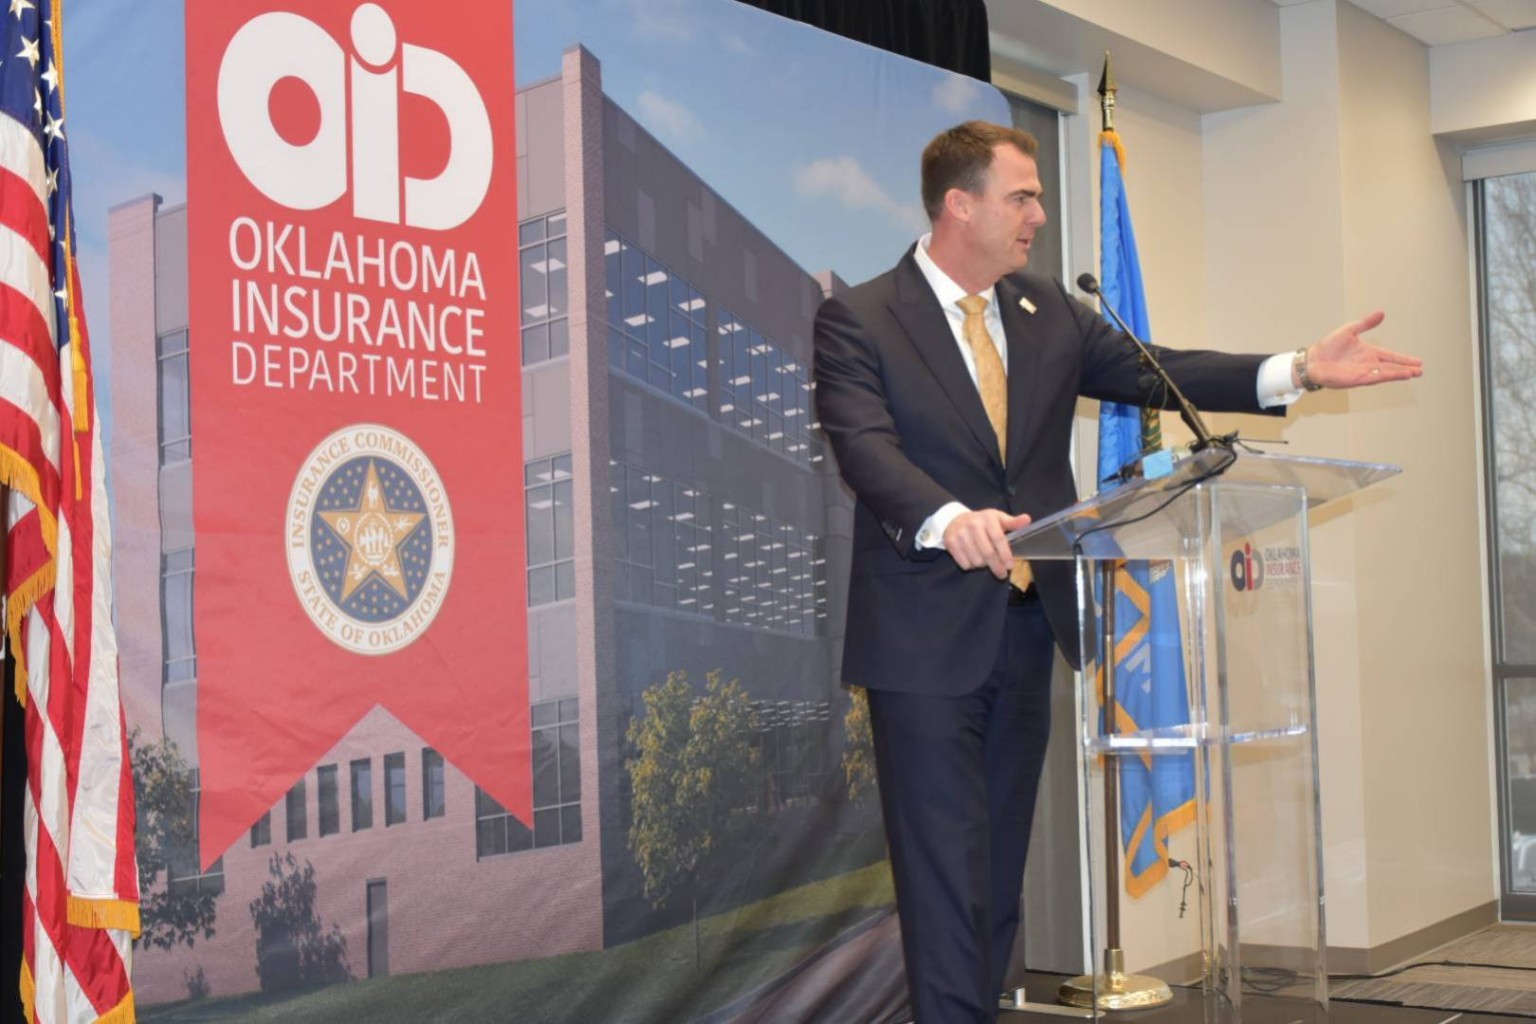 Oklahoma Insurance Department Celebra nueva Instalación